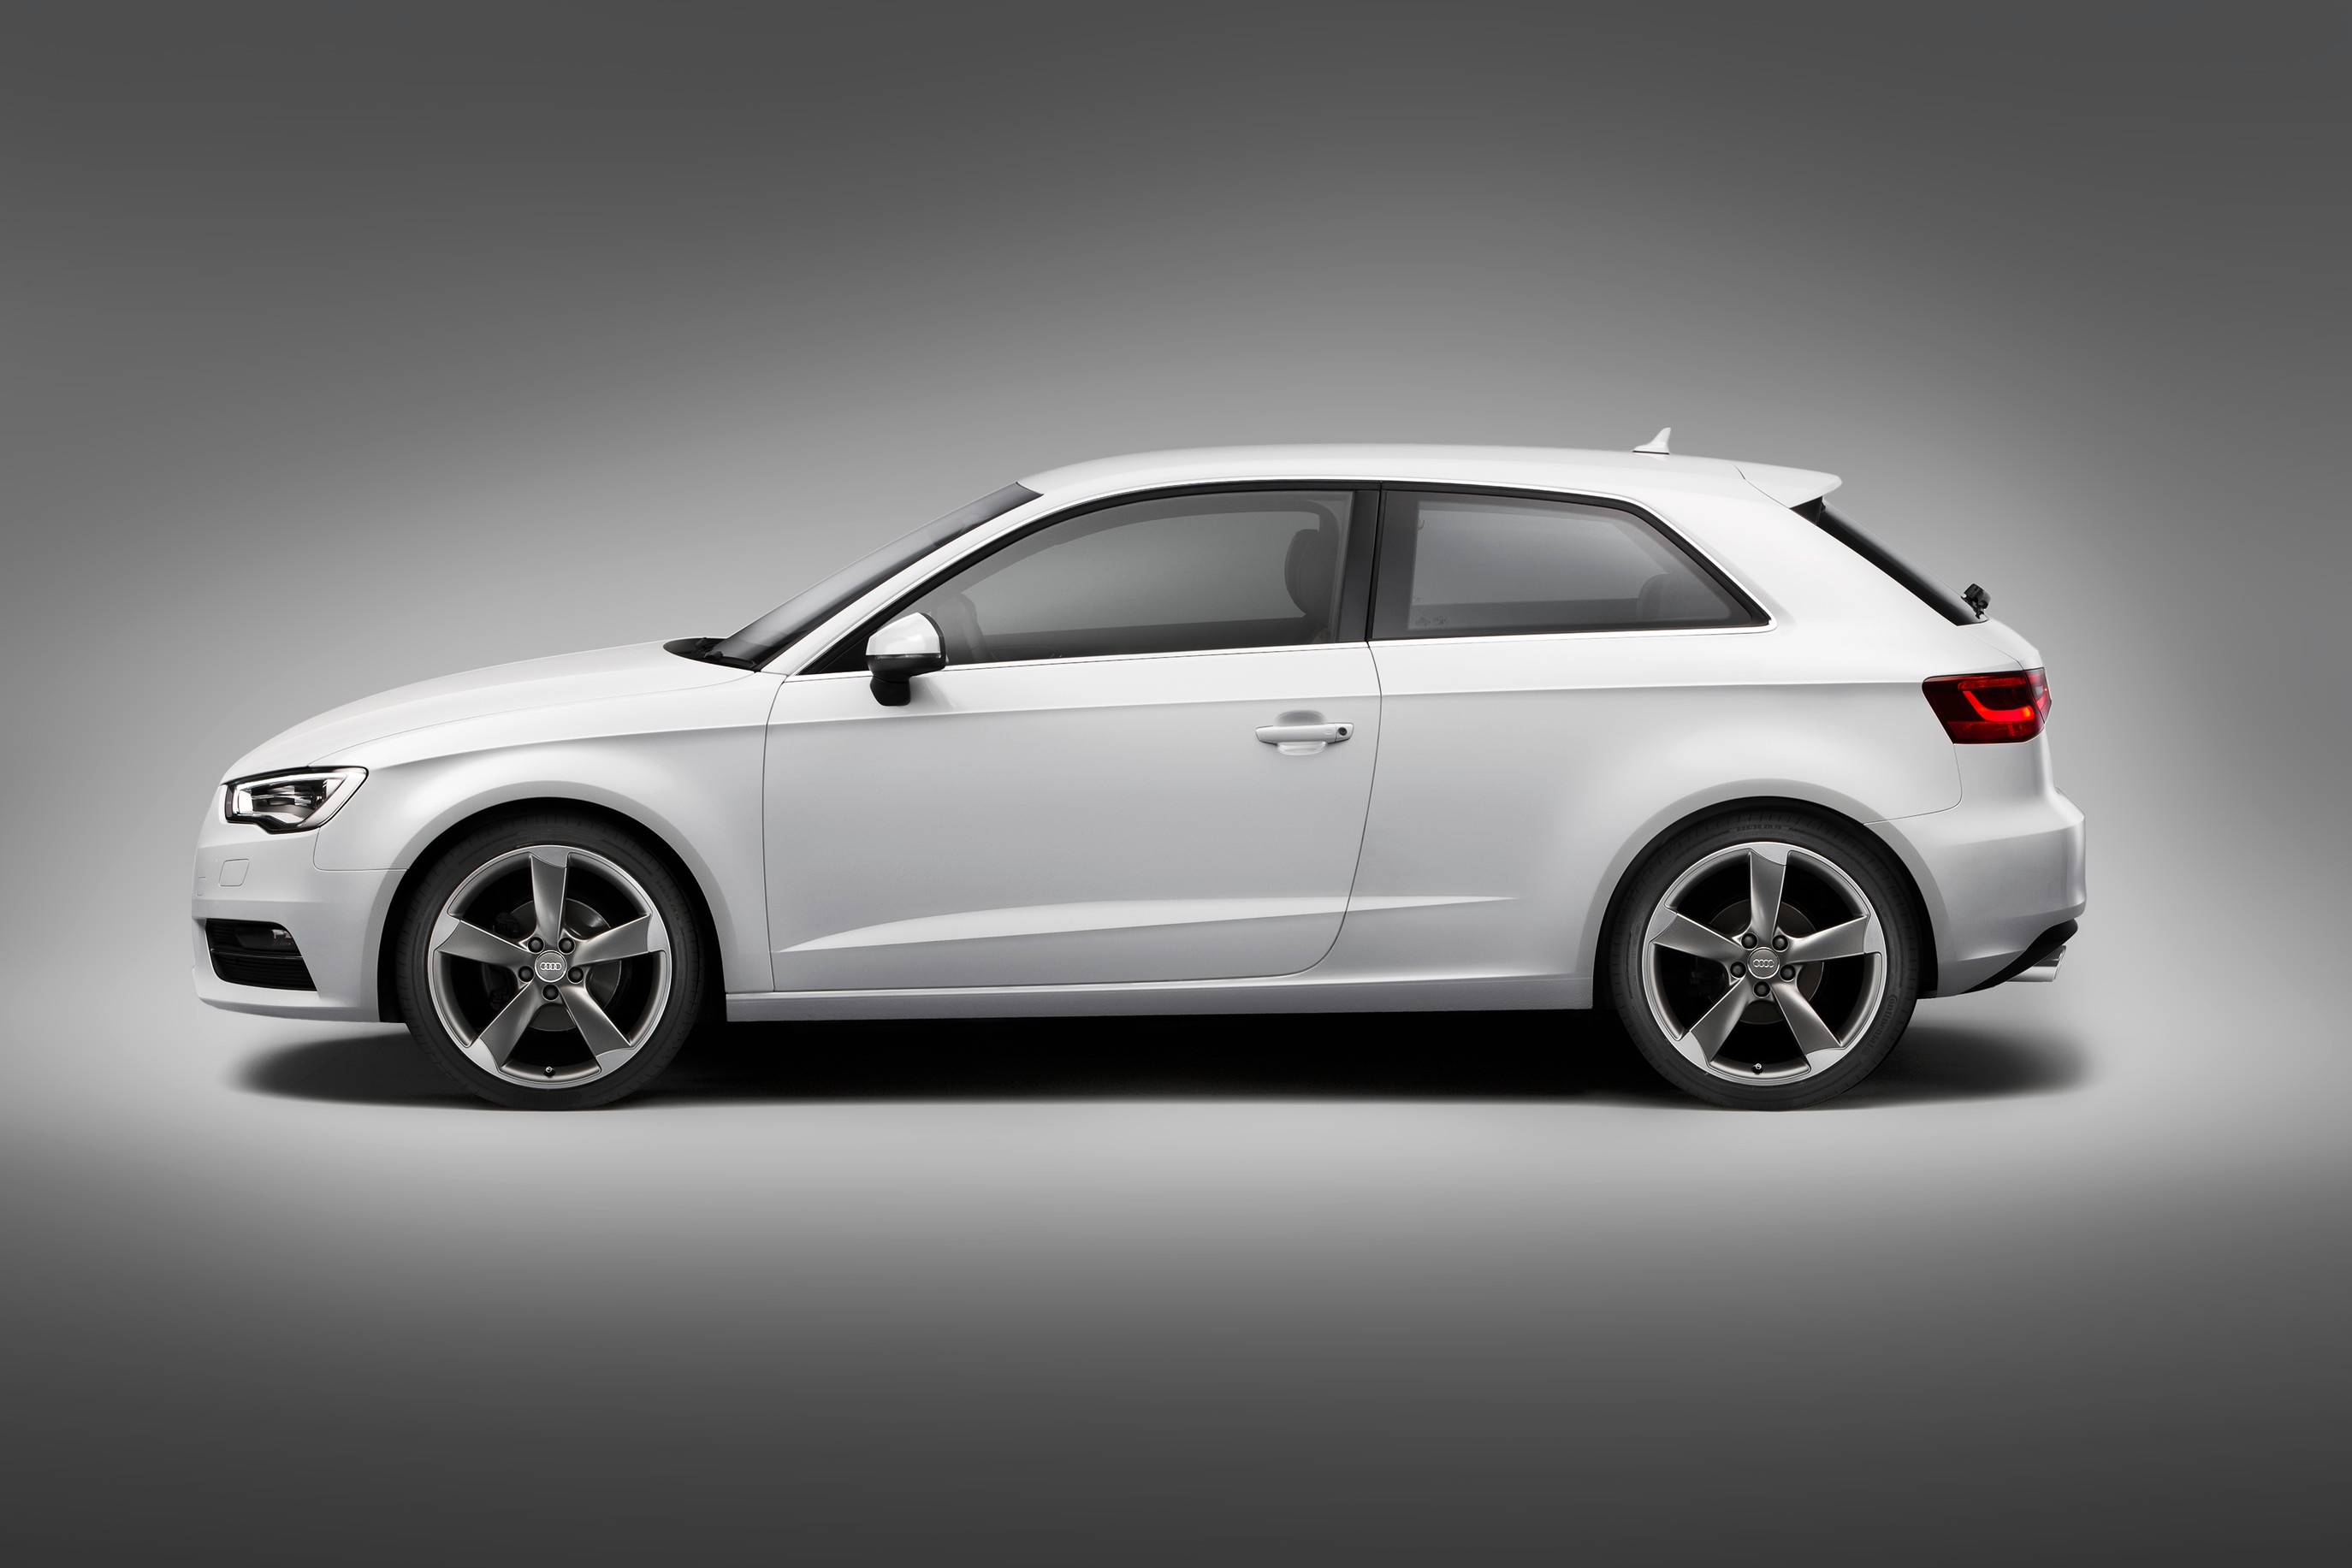 Essai Test Audi A3 Sportback 30 g-tron 2021 - Essai du Moniteur Automobile